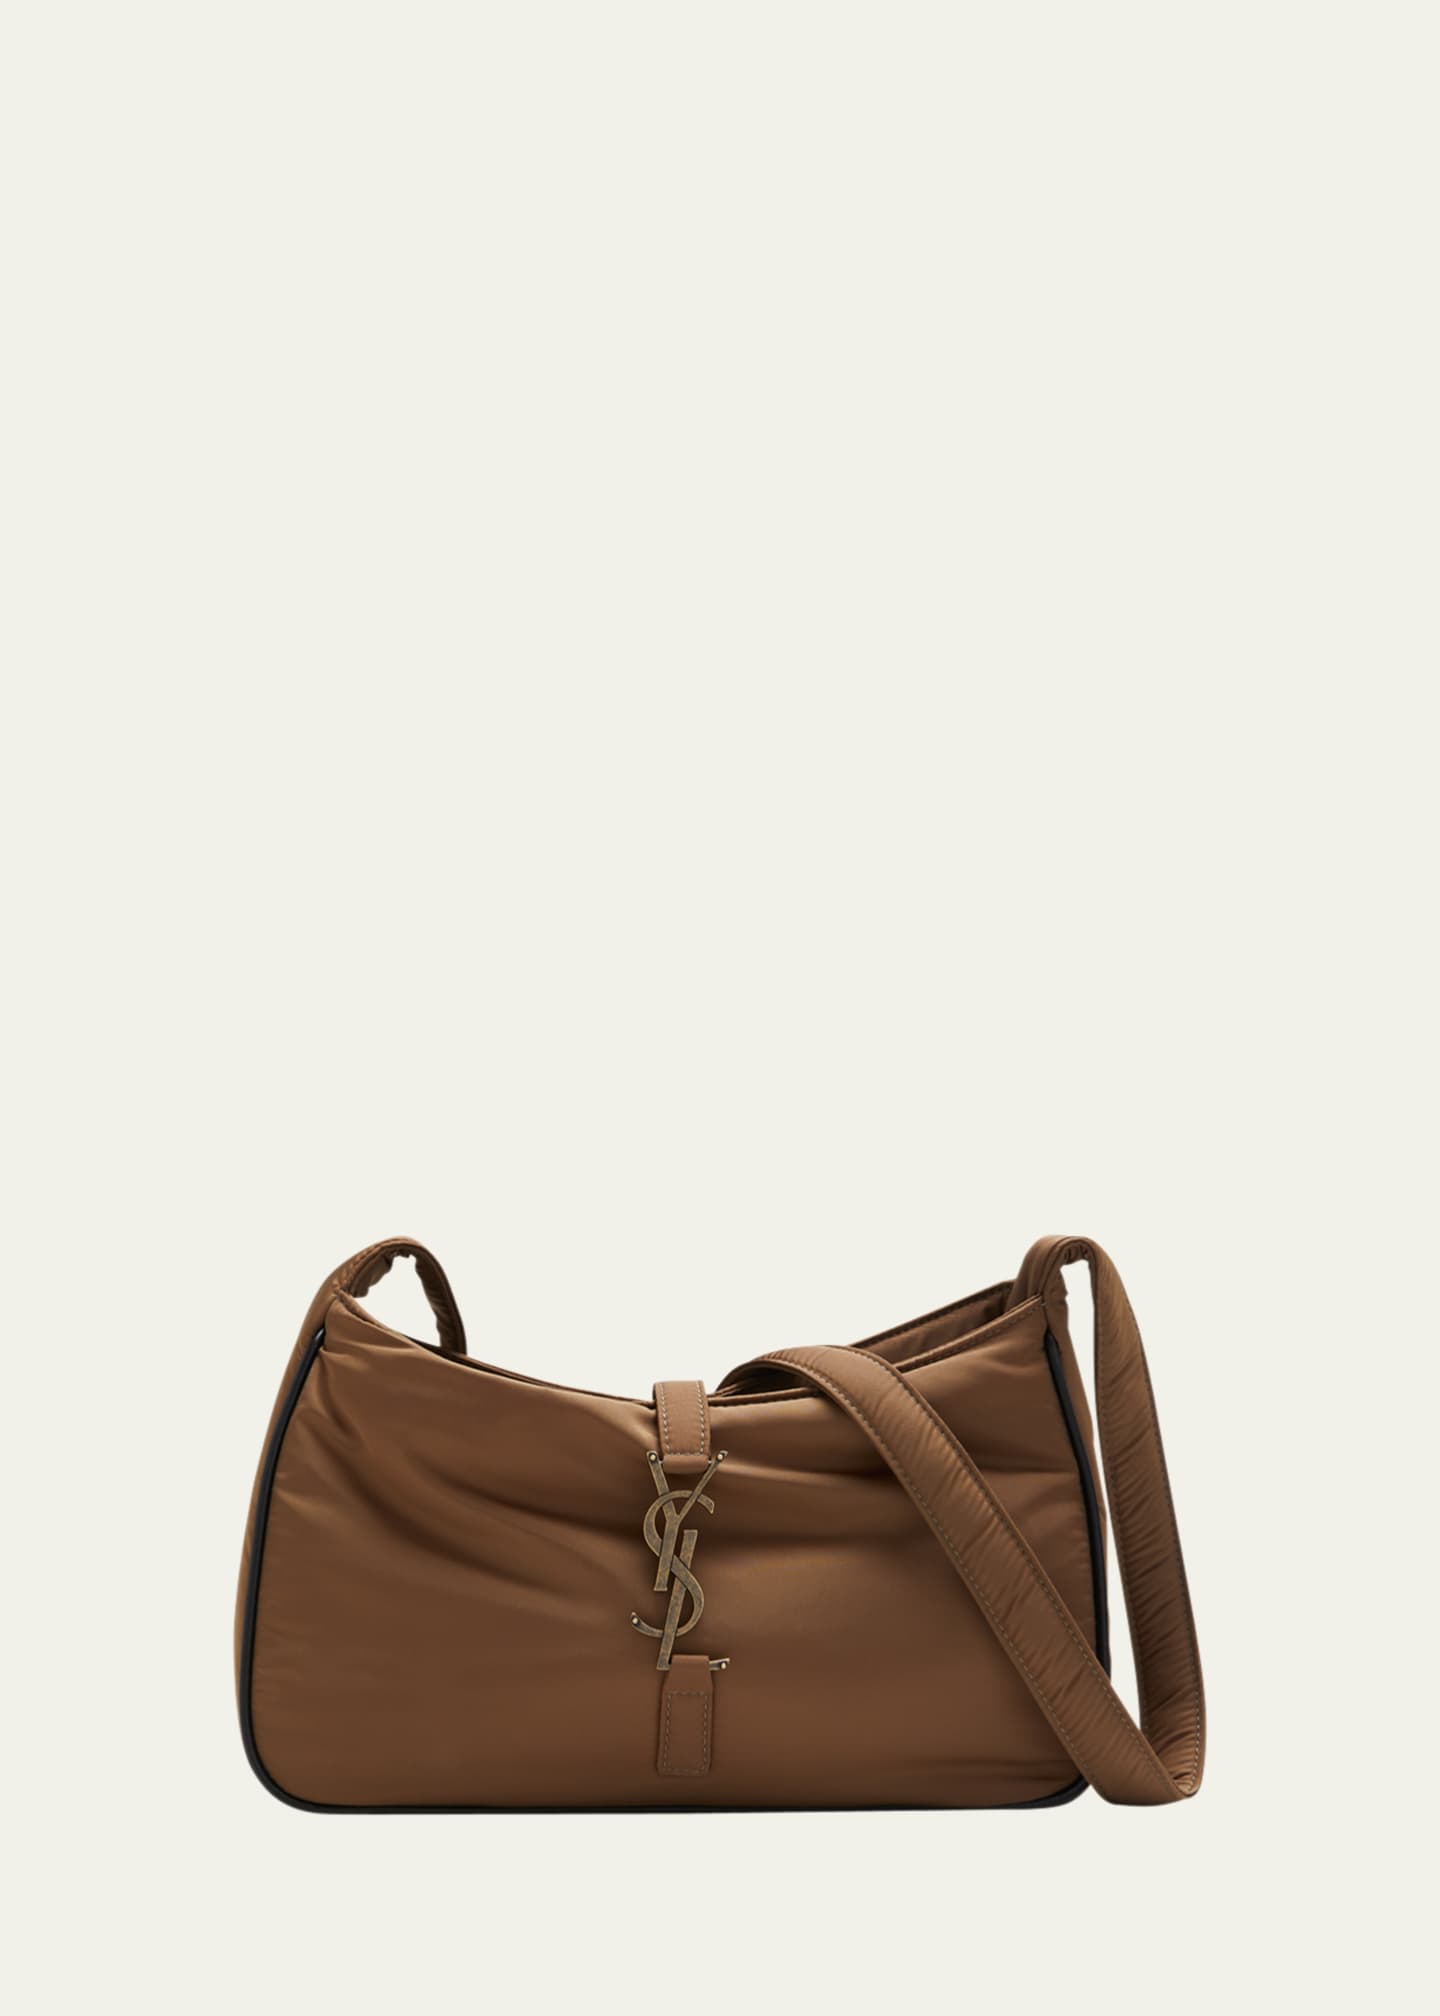 ysl bags, designer bag, side bag, leather bag, branded bag